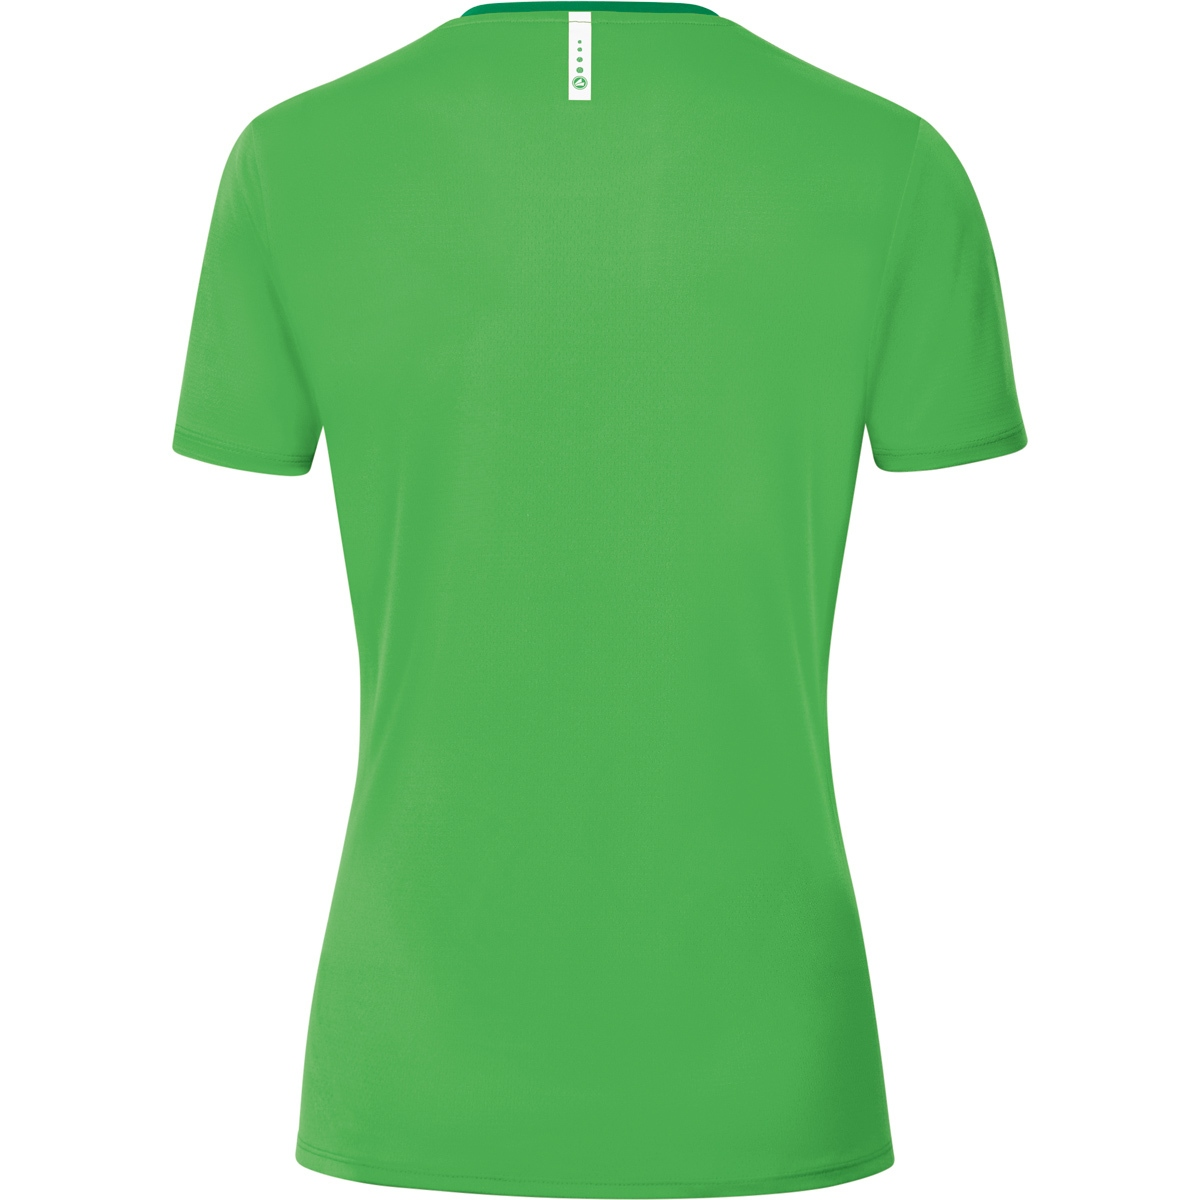 36, 6120 soft Champ Gr. green/sportgrün, 2.0 Damen, T-Shirt JAKO